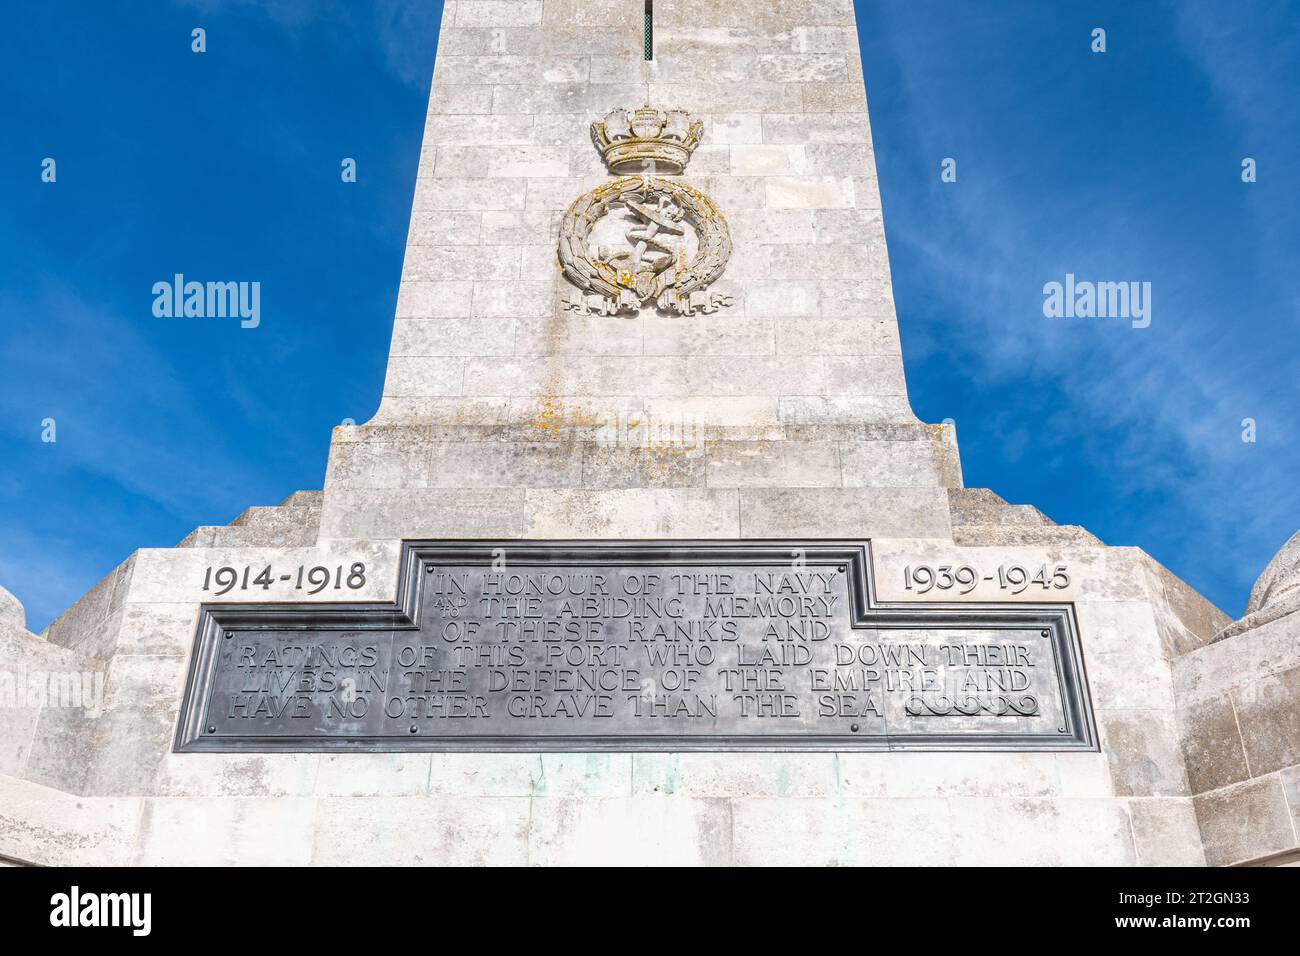 Southsea Naval Memorial (également appelé Portsmouth Naval Memorial) commémorant 25 000 marins britanniques et du Commonwealth, Hampshire, Angleterre, Royaume-Uni Banque D'Images